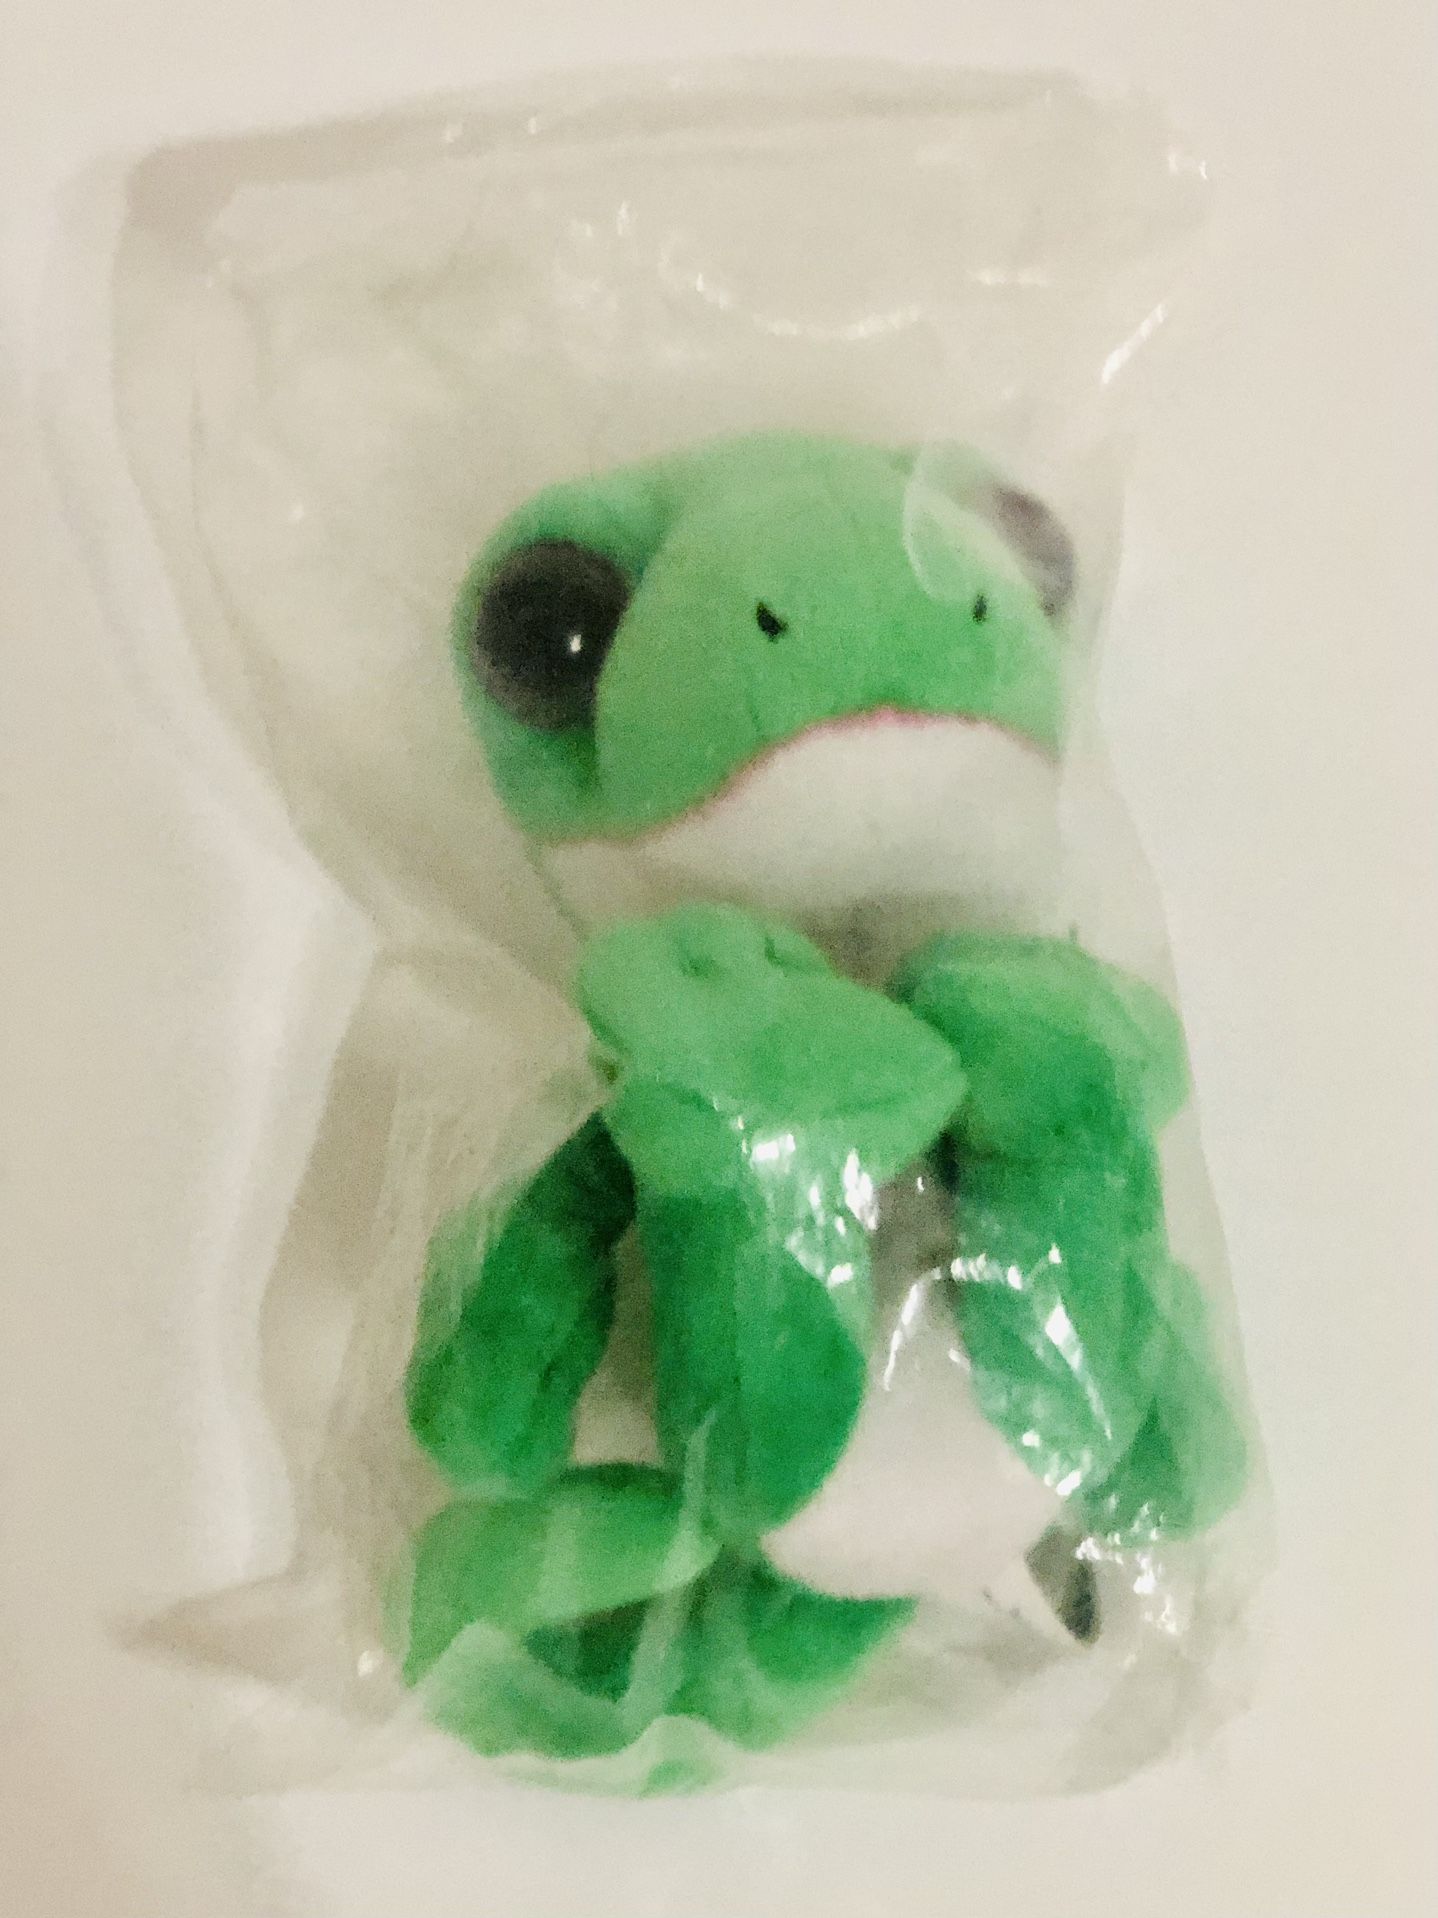 NEW Geico Gecko Insurance Lizard 5” Promotional Plush Stuffed Animal Toy